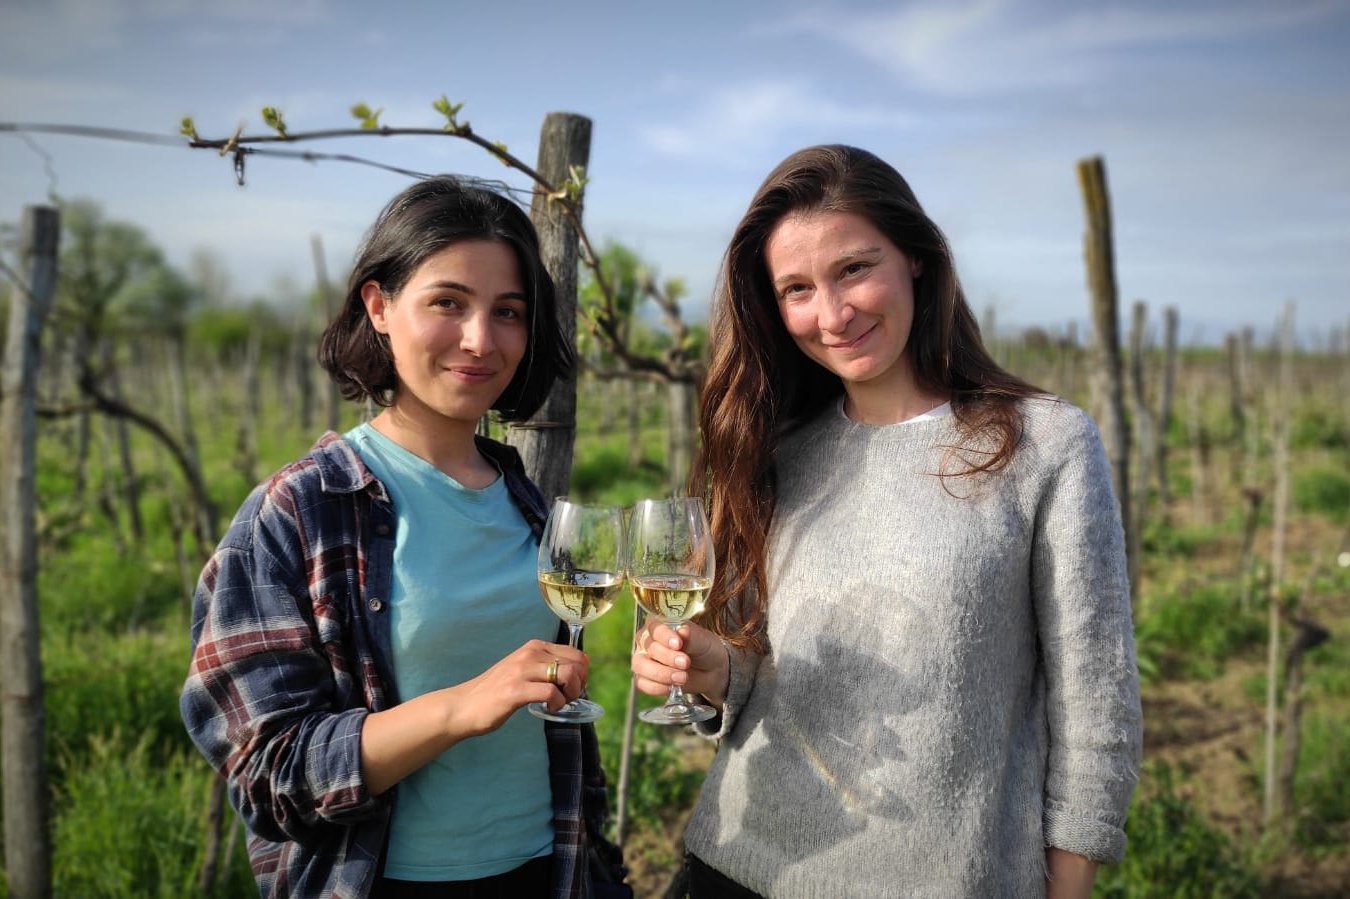 Du besöker en ekologisk vingård som drivs av två systrar